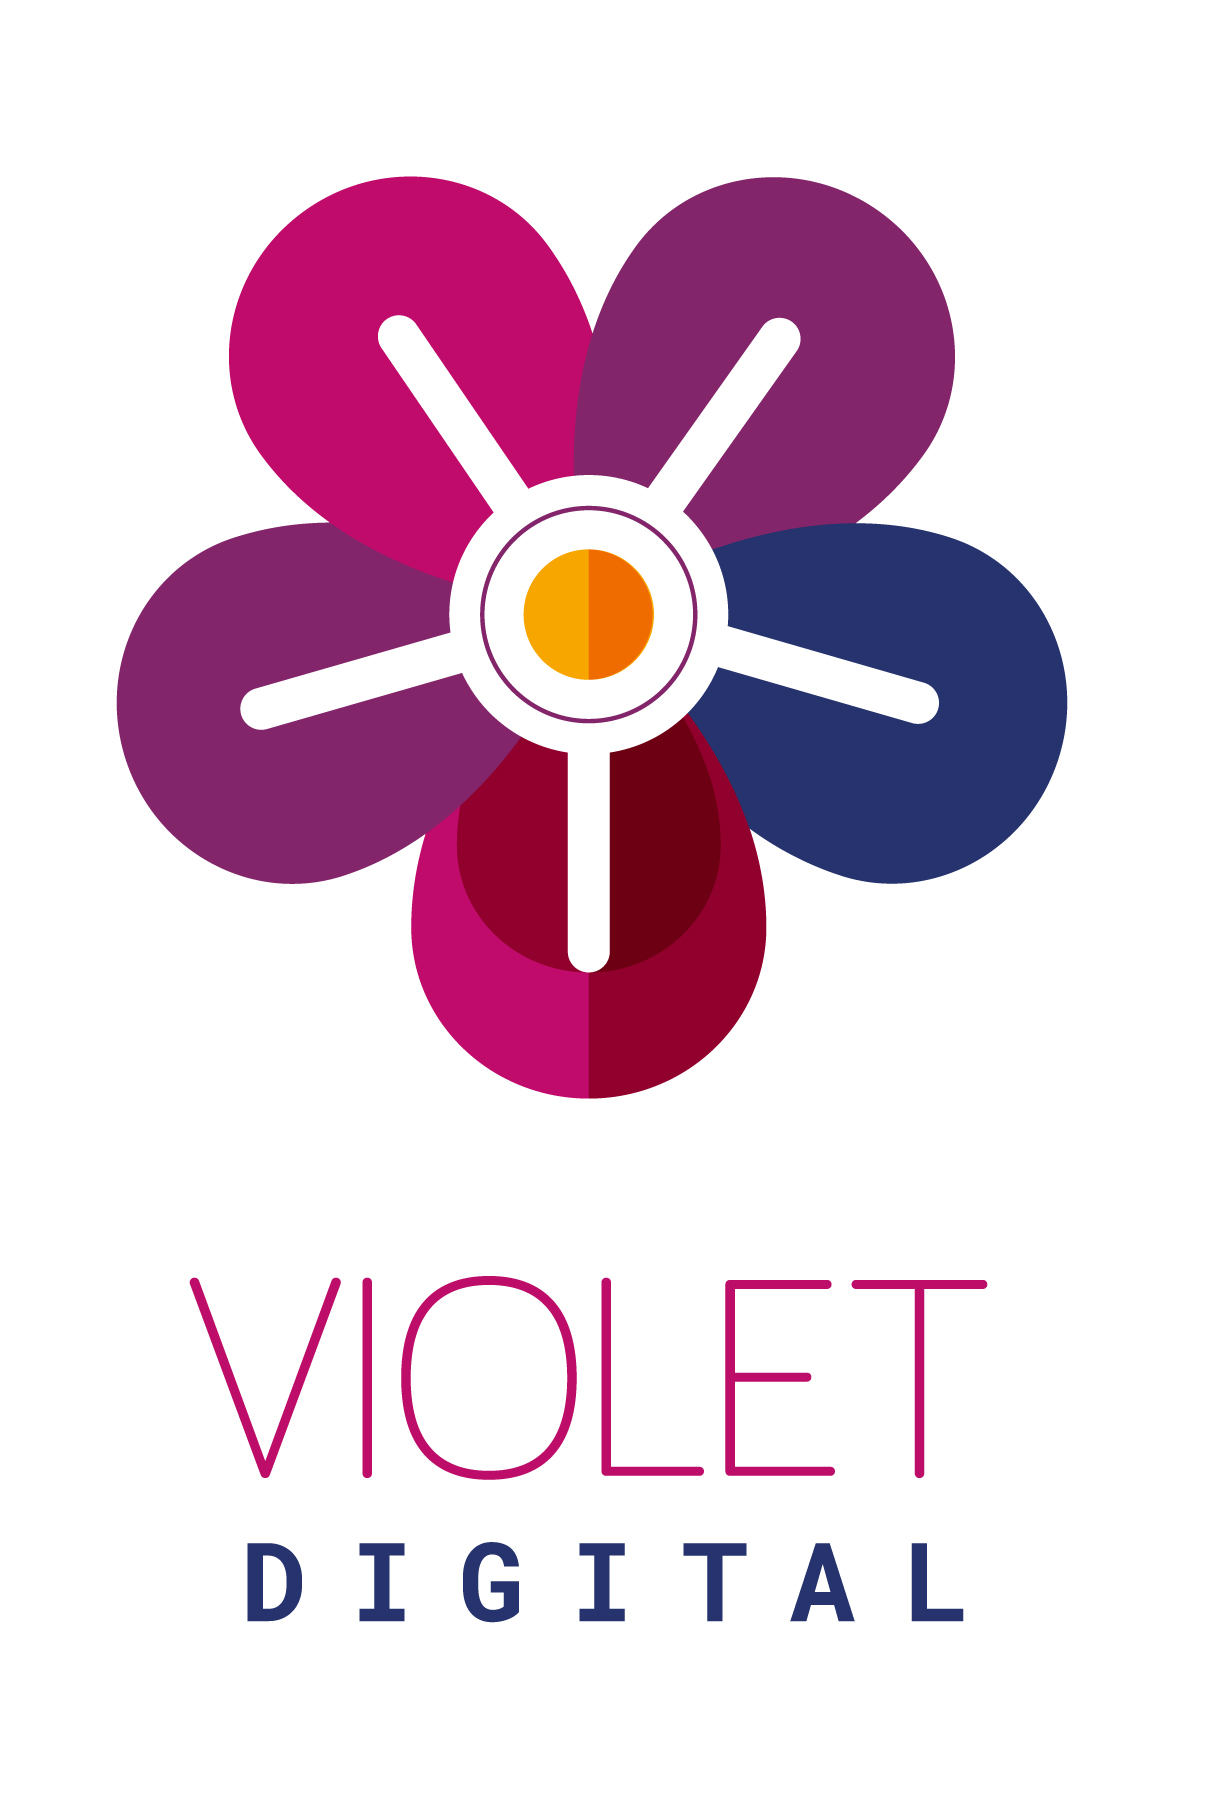 Violet Digital